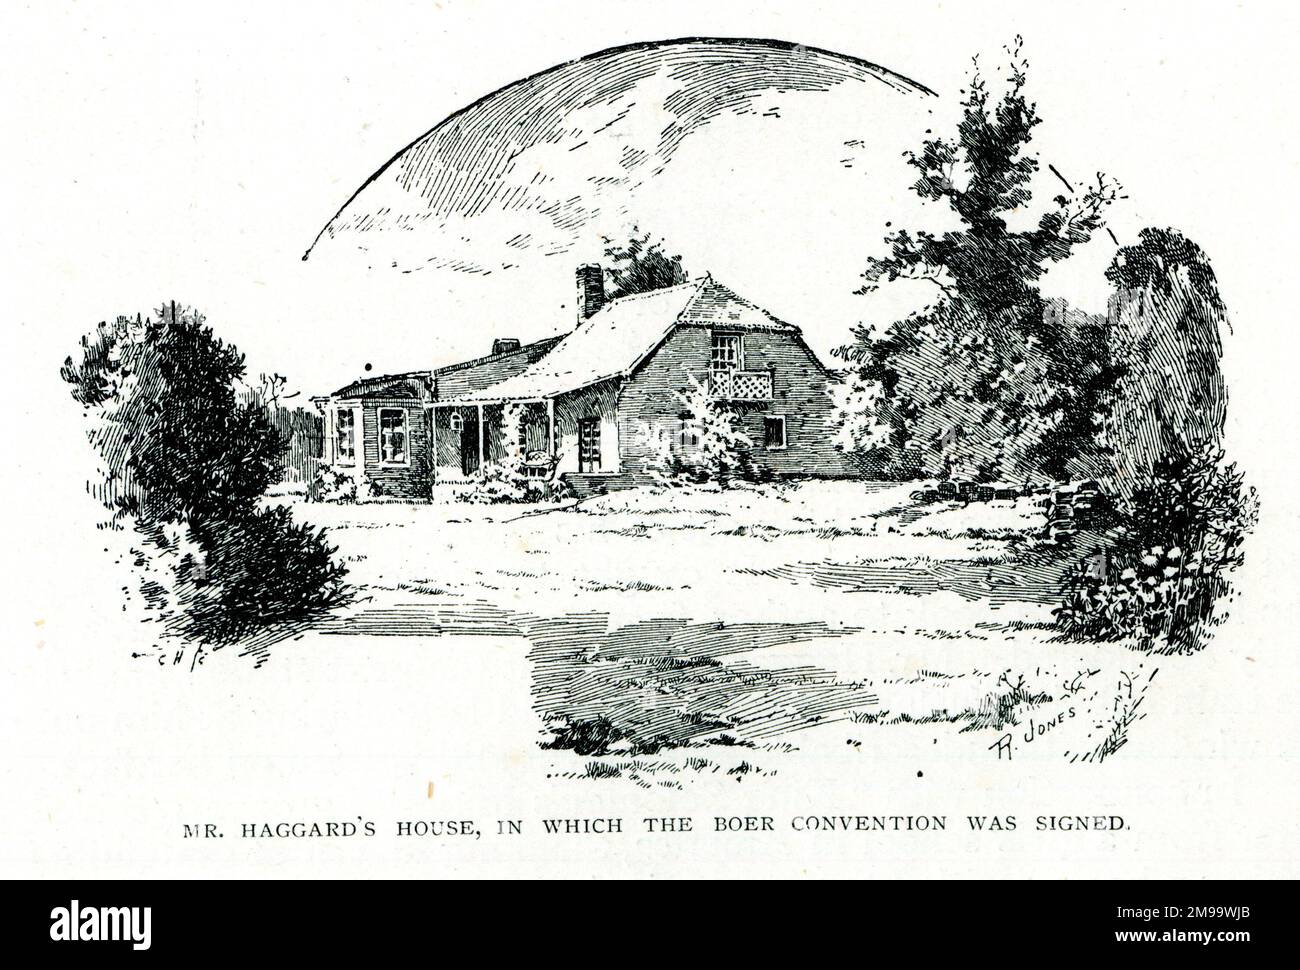 Das Haus von Rider Haggard, in dem die Boer Convention (Pretoria Convention) im Jahr 1881 unterzeichnet wurde und der erste Boer war beendet wurde. Stockfoto